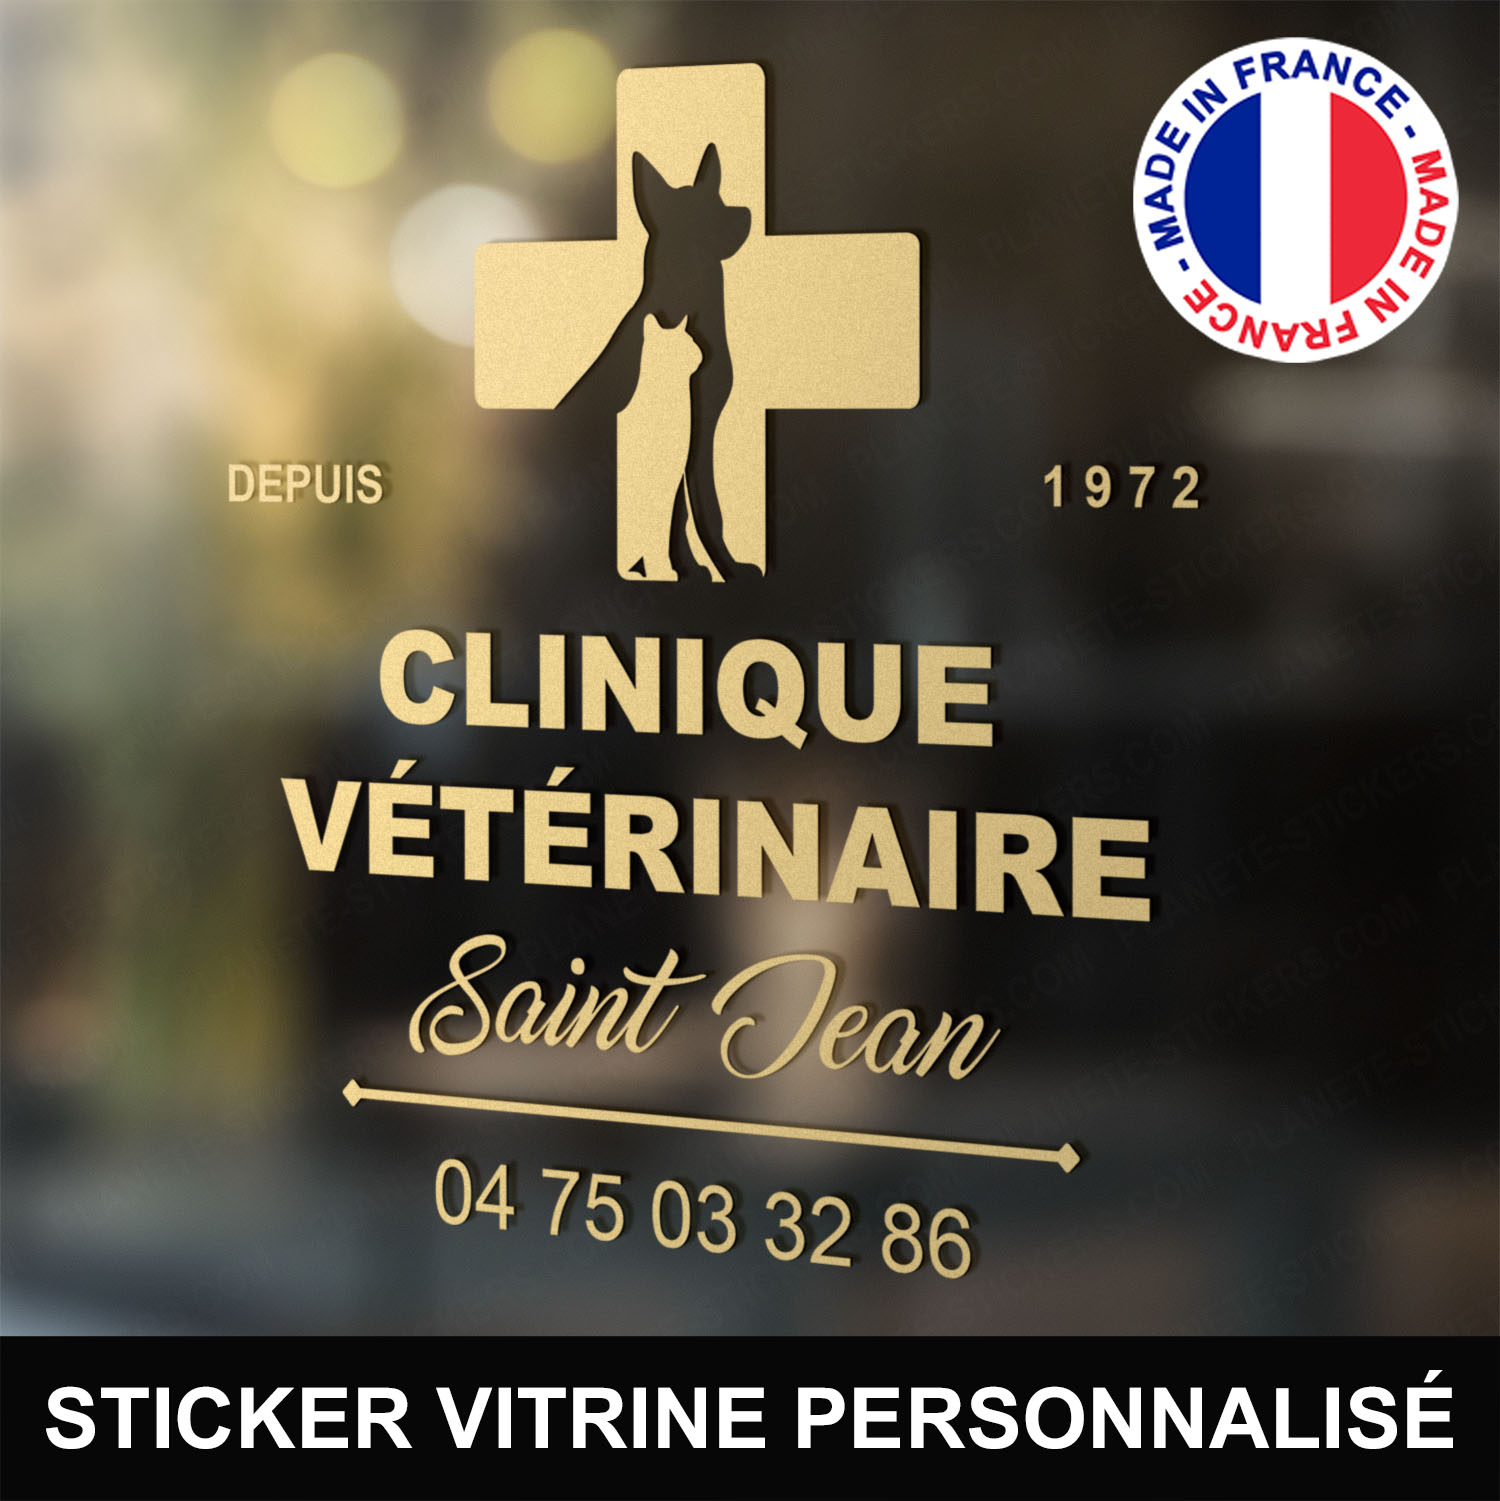 ref1veterinairevitrine-stickers-clinique-vétérinaire-vitrine-sticker-personnalisé-autocollant-pro-veterinaire-professionnel